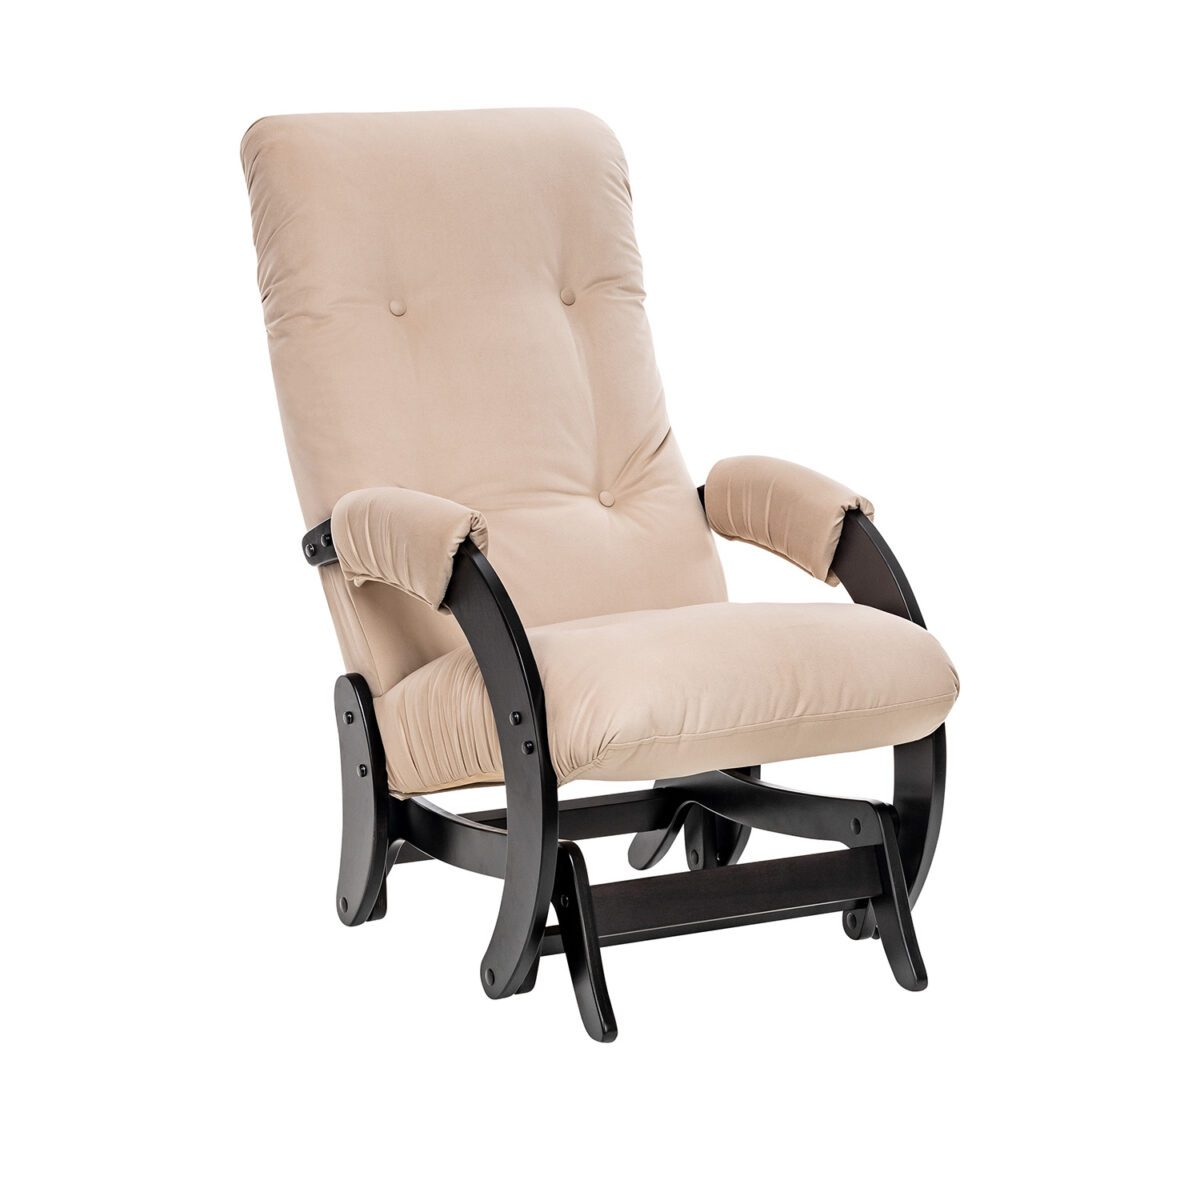 Кресло-качалка Модель 68 (Leset Футура) Венге текстура, ткань V 18